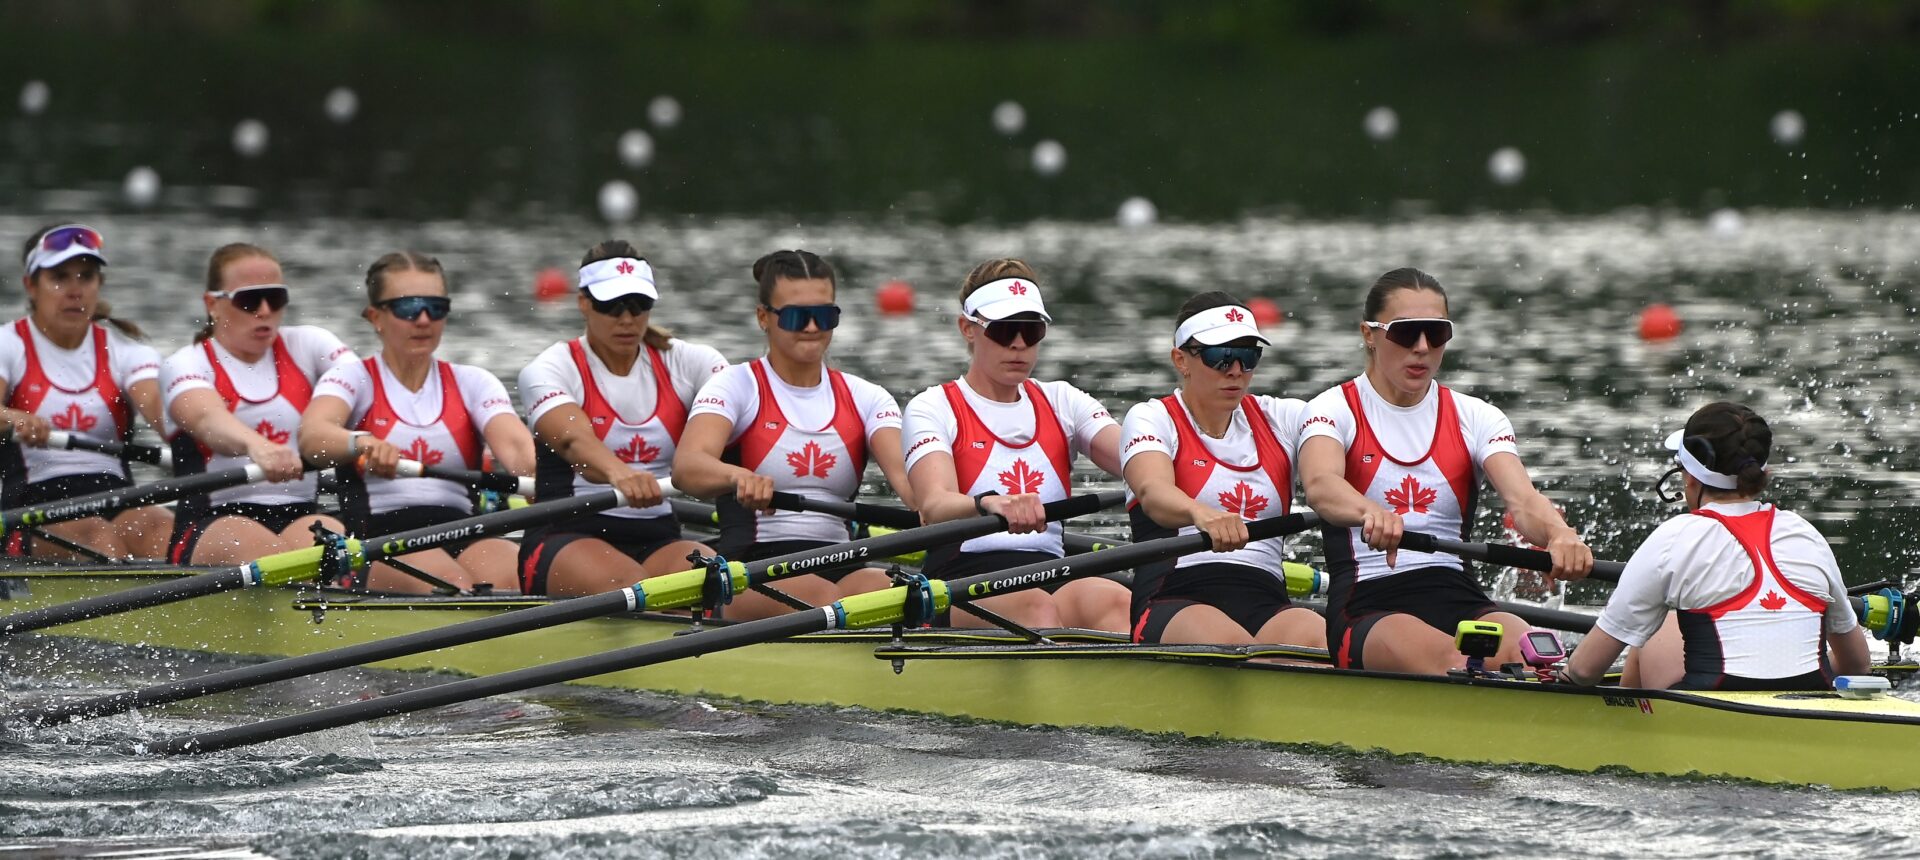 Team Canada’s Paris 2024 Rowing Team Unveiled